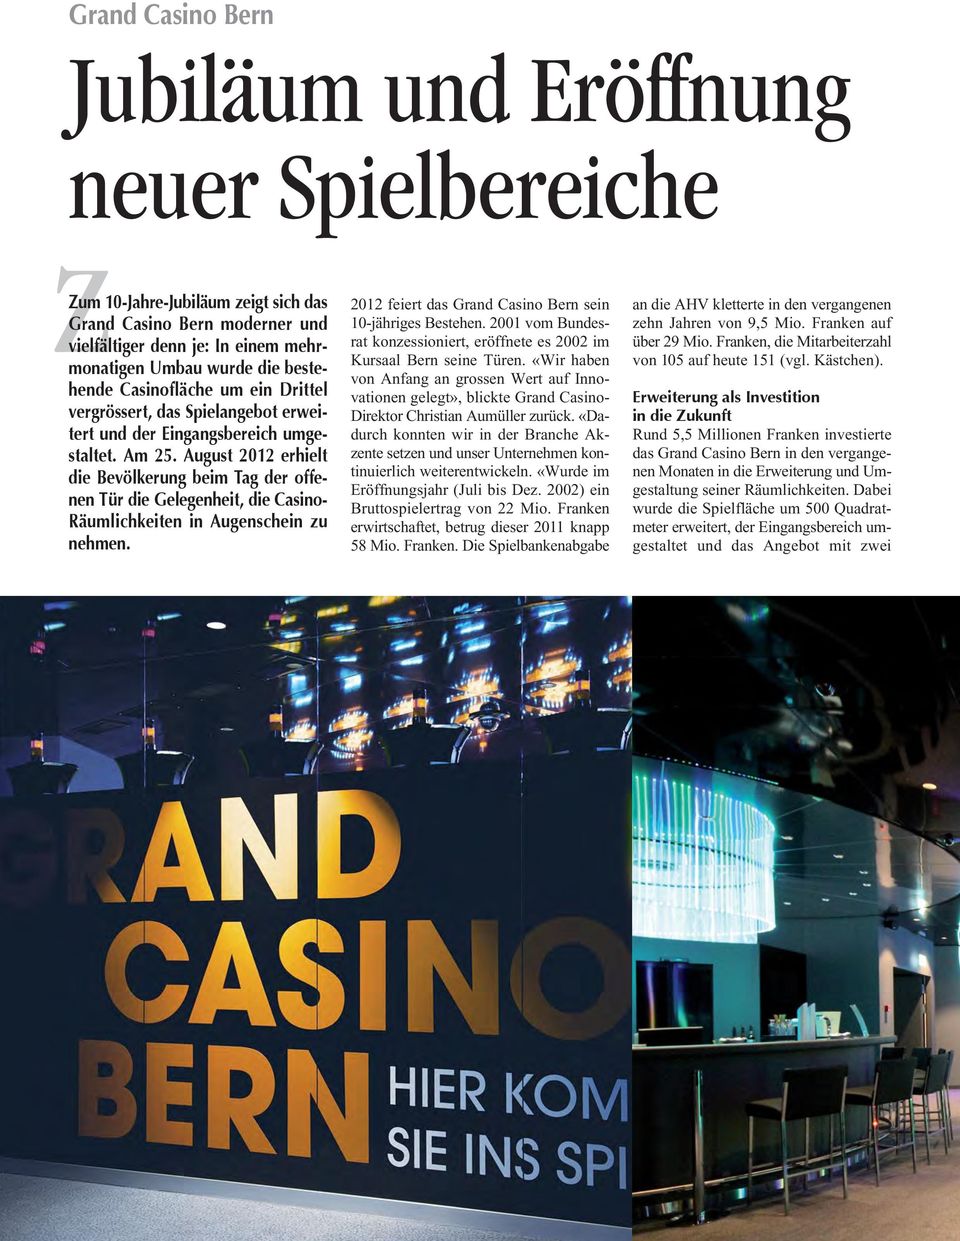 August 2012 erhielt die Bevölkerung beim Tag der offenen Tür die Gelegenheit, die Casino- Räumlichkeiten in Augenschein zu nehmen. 2012 feiert das Grand Casino Bern sein 10-jähriges Bestehen.